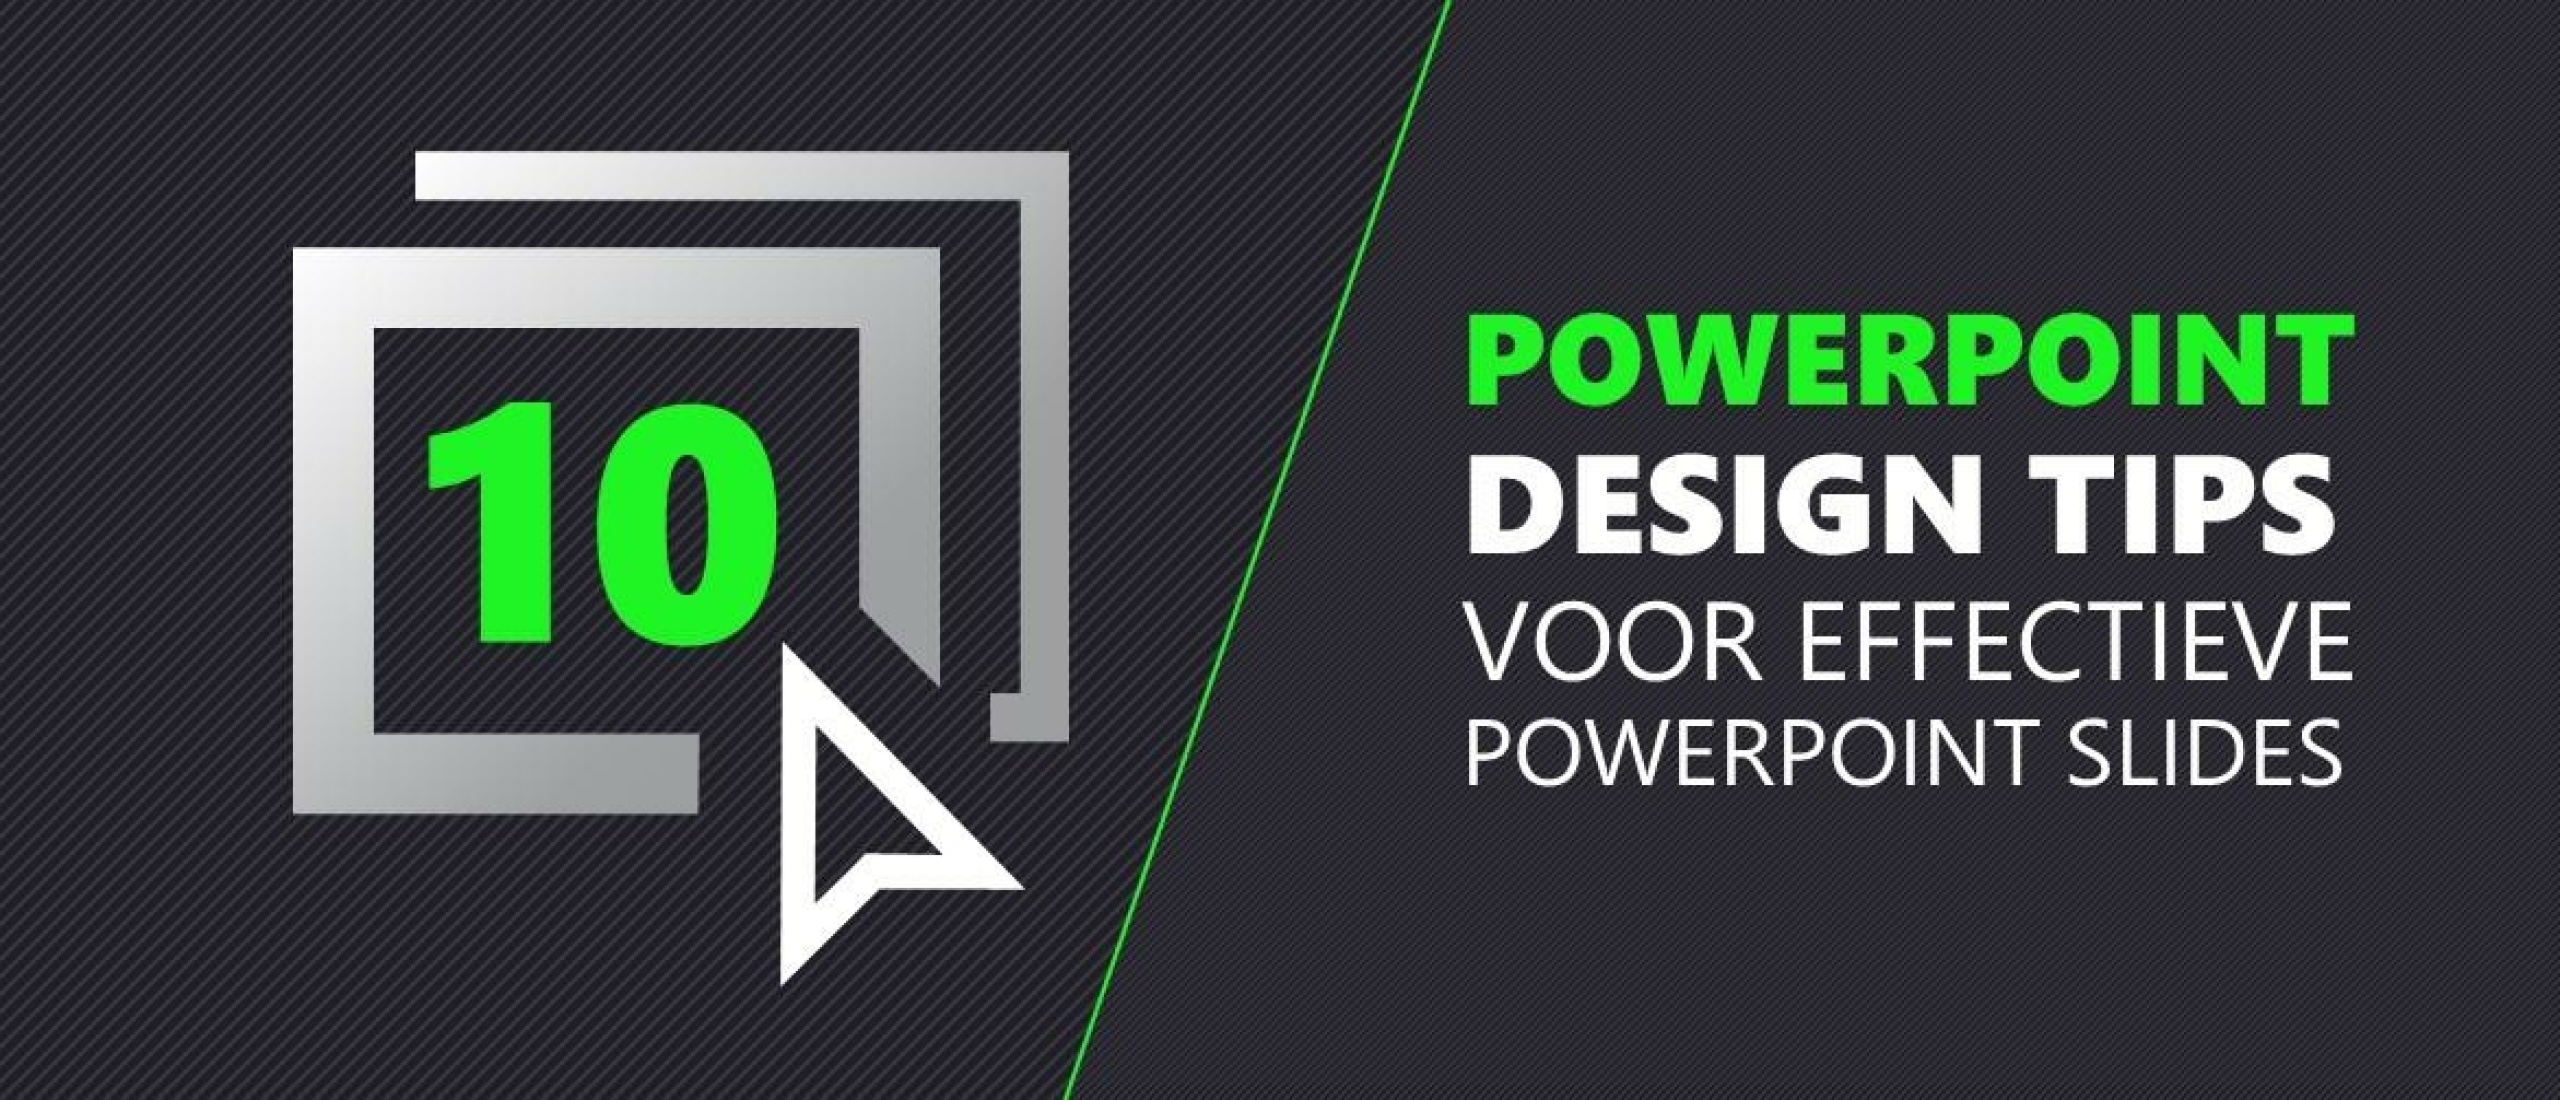 10 PowerPoint design tips voor effectieve PowerPoint slides